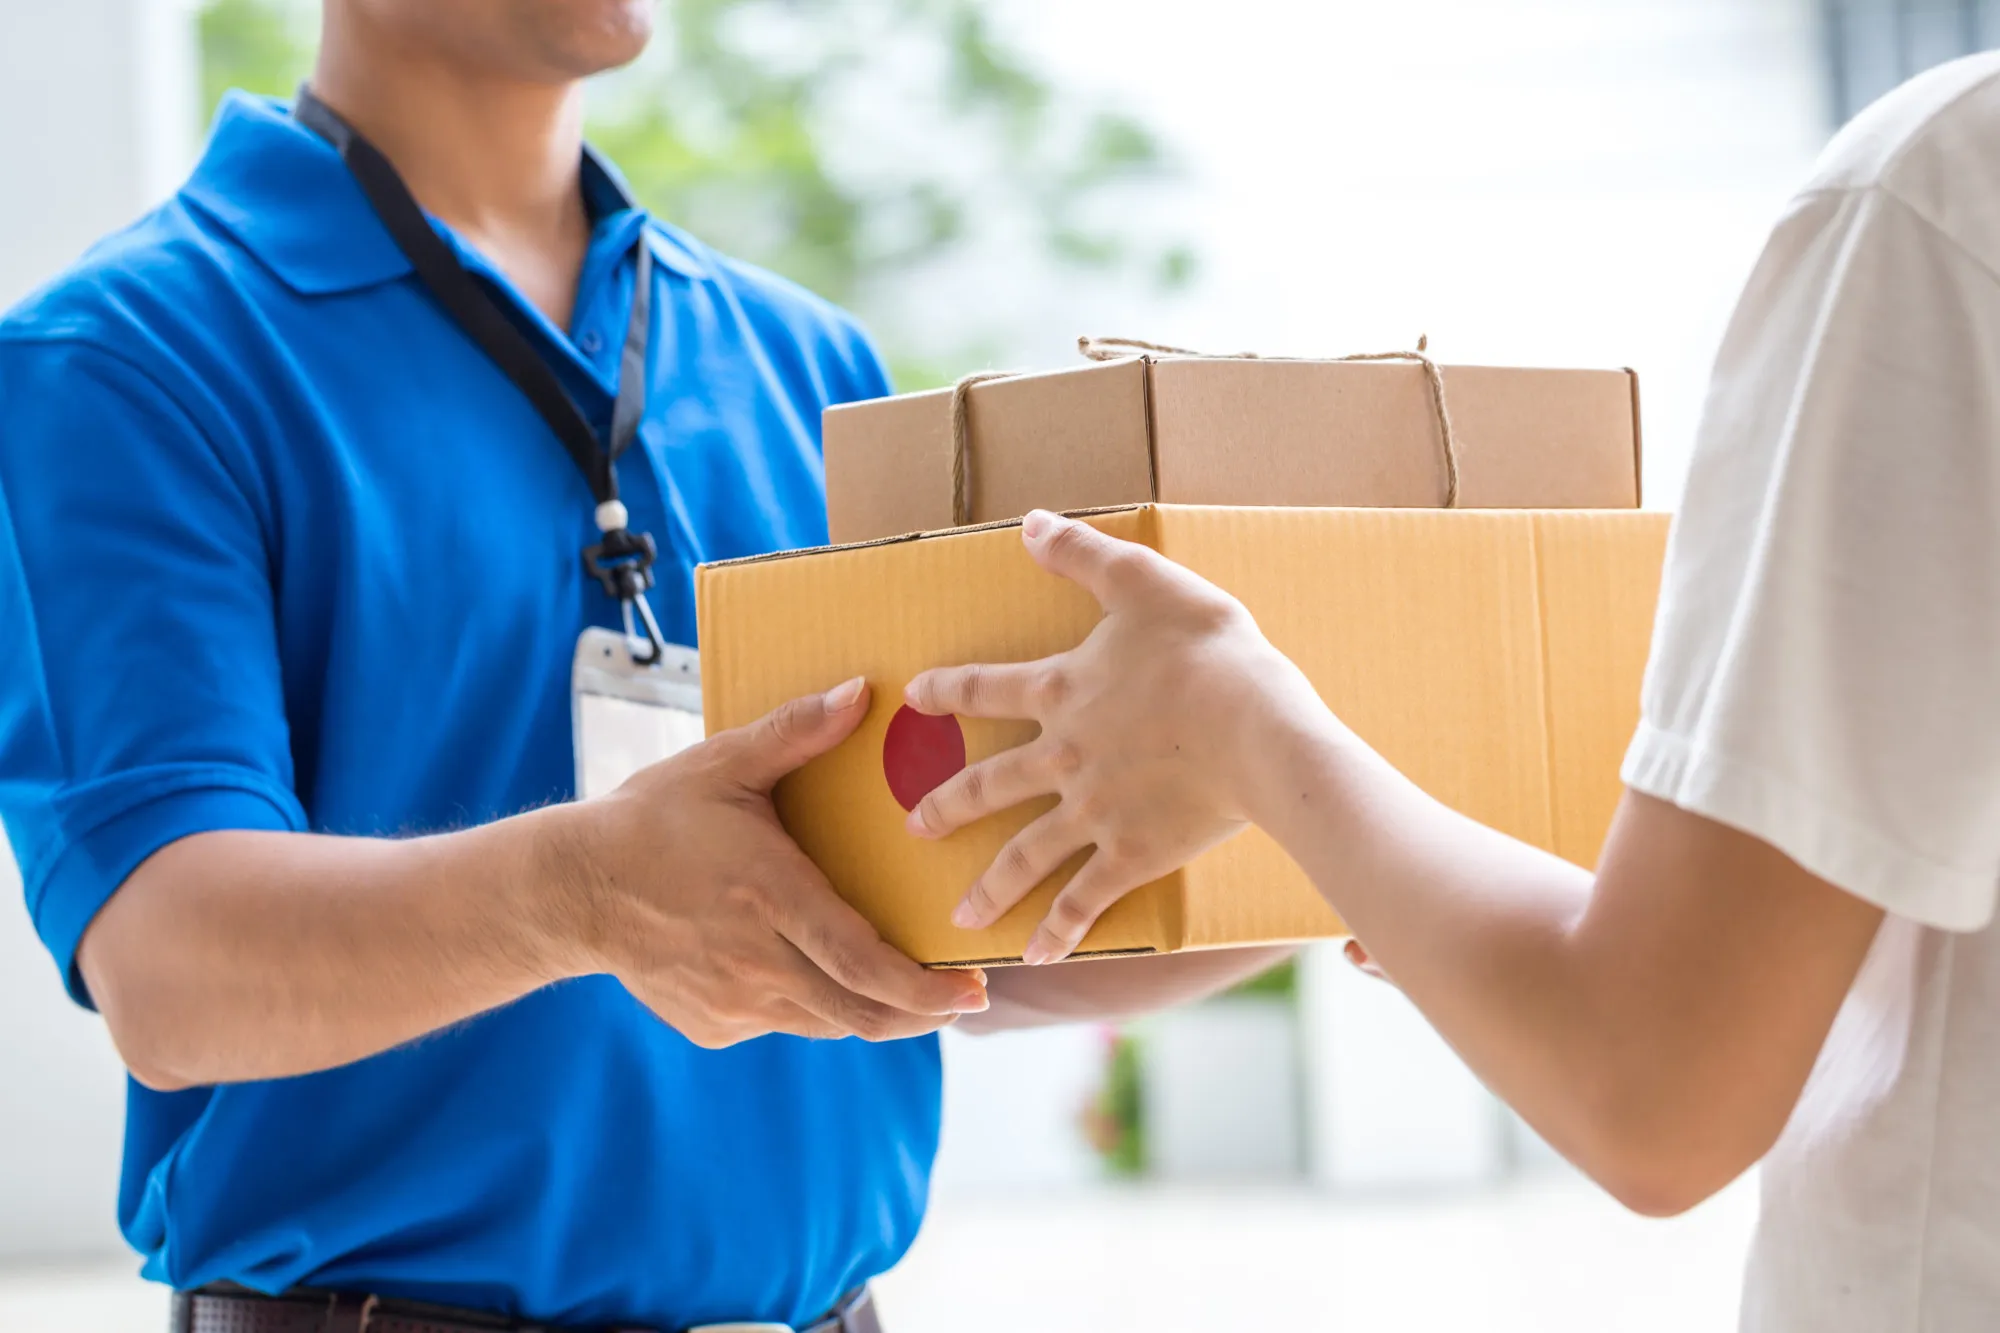 Tips for Ensuring Timely Deliveries